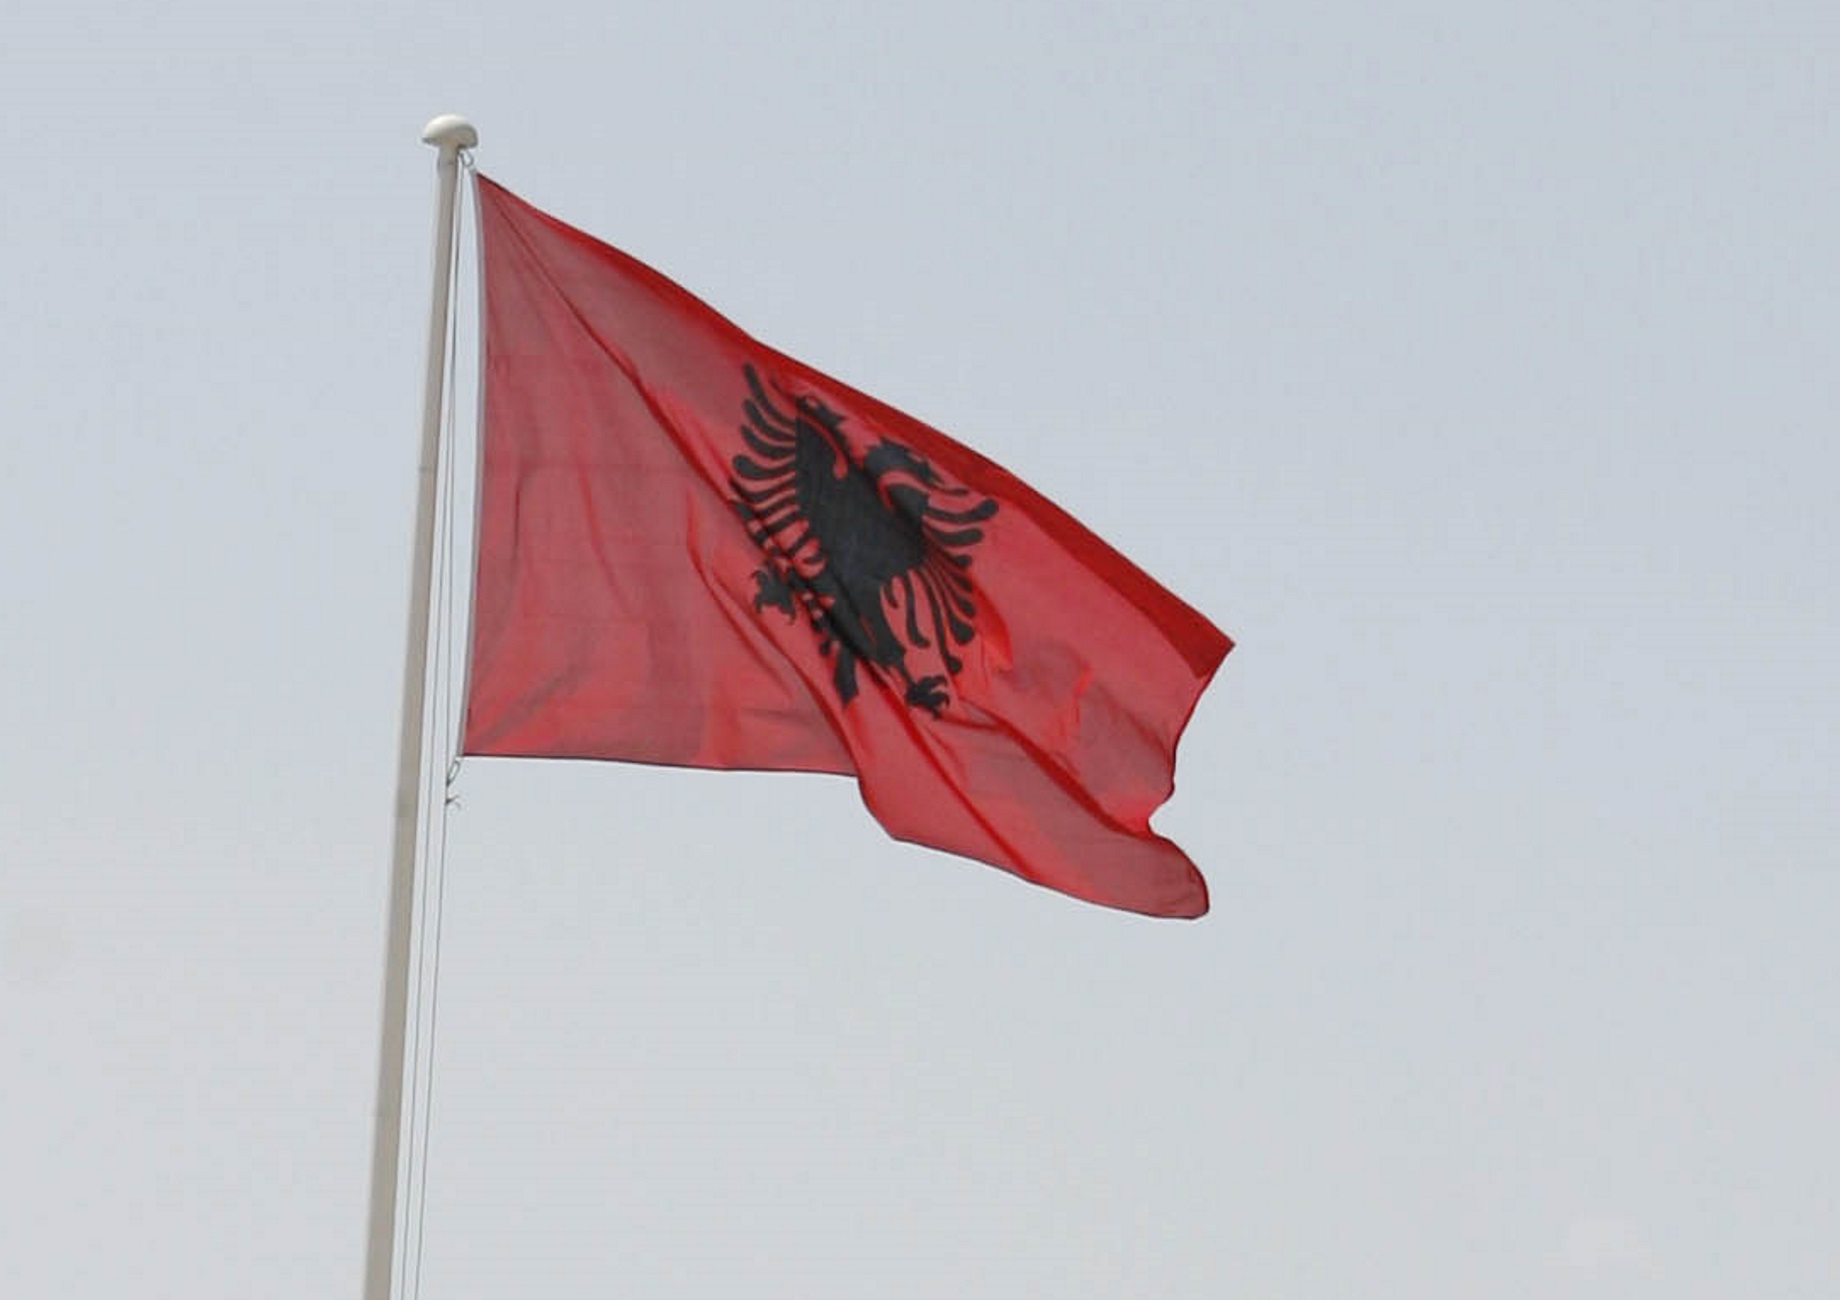 Βόλος: Με δάκρυα ζήτησε συγγνώμη ο μαθητής που κρέμασε την αλβανική σημαία σε σχολείο